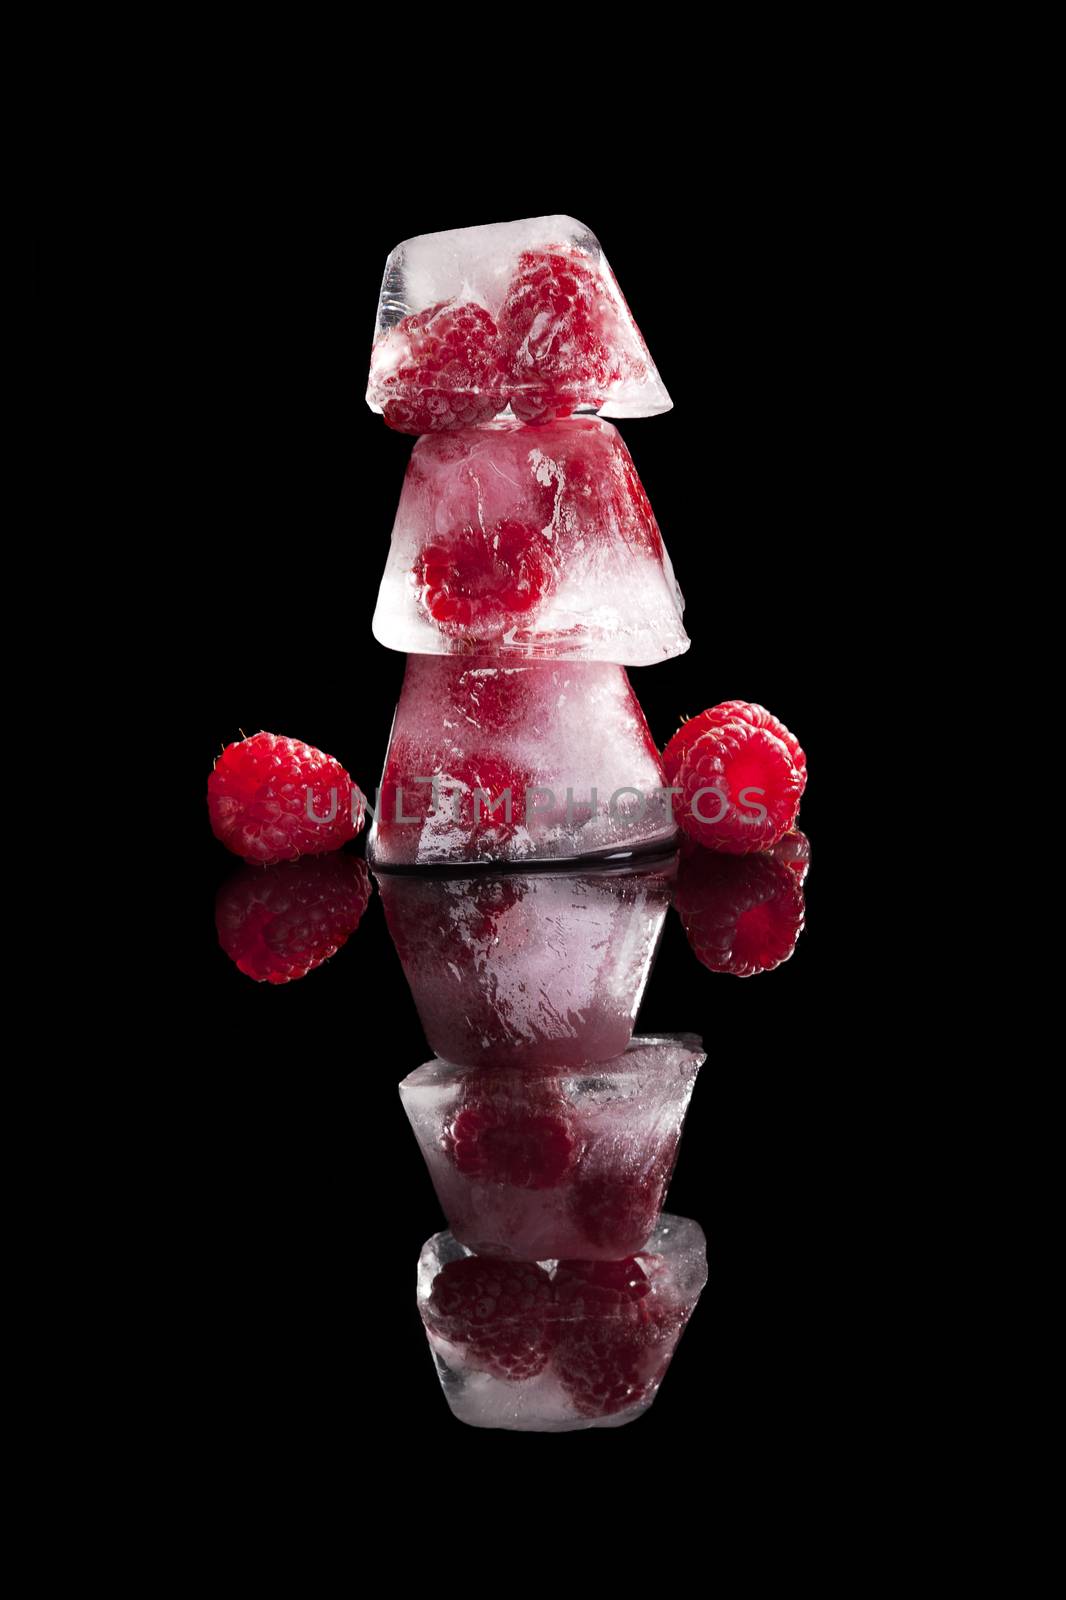 Fruit frozen in ice cubes. by eskymaks